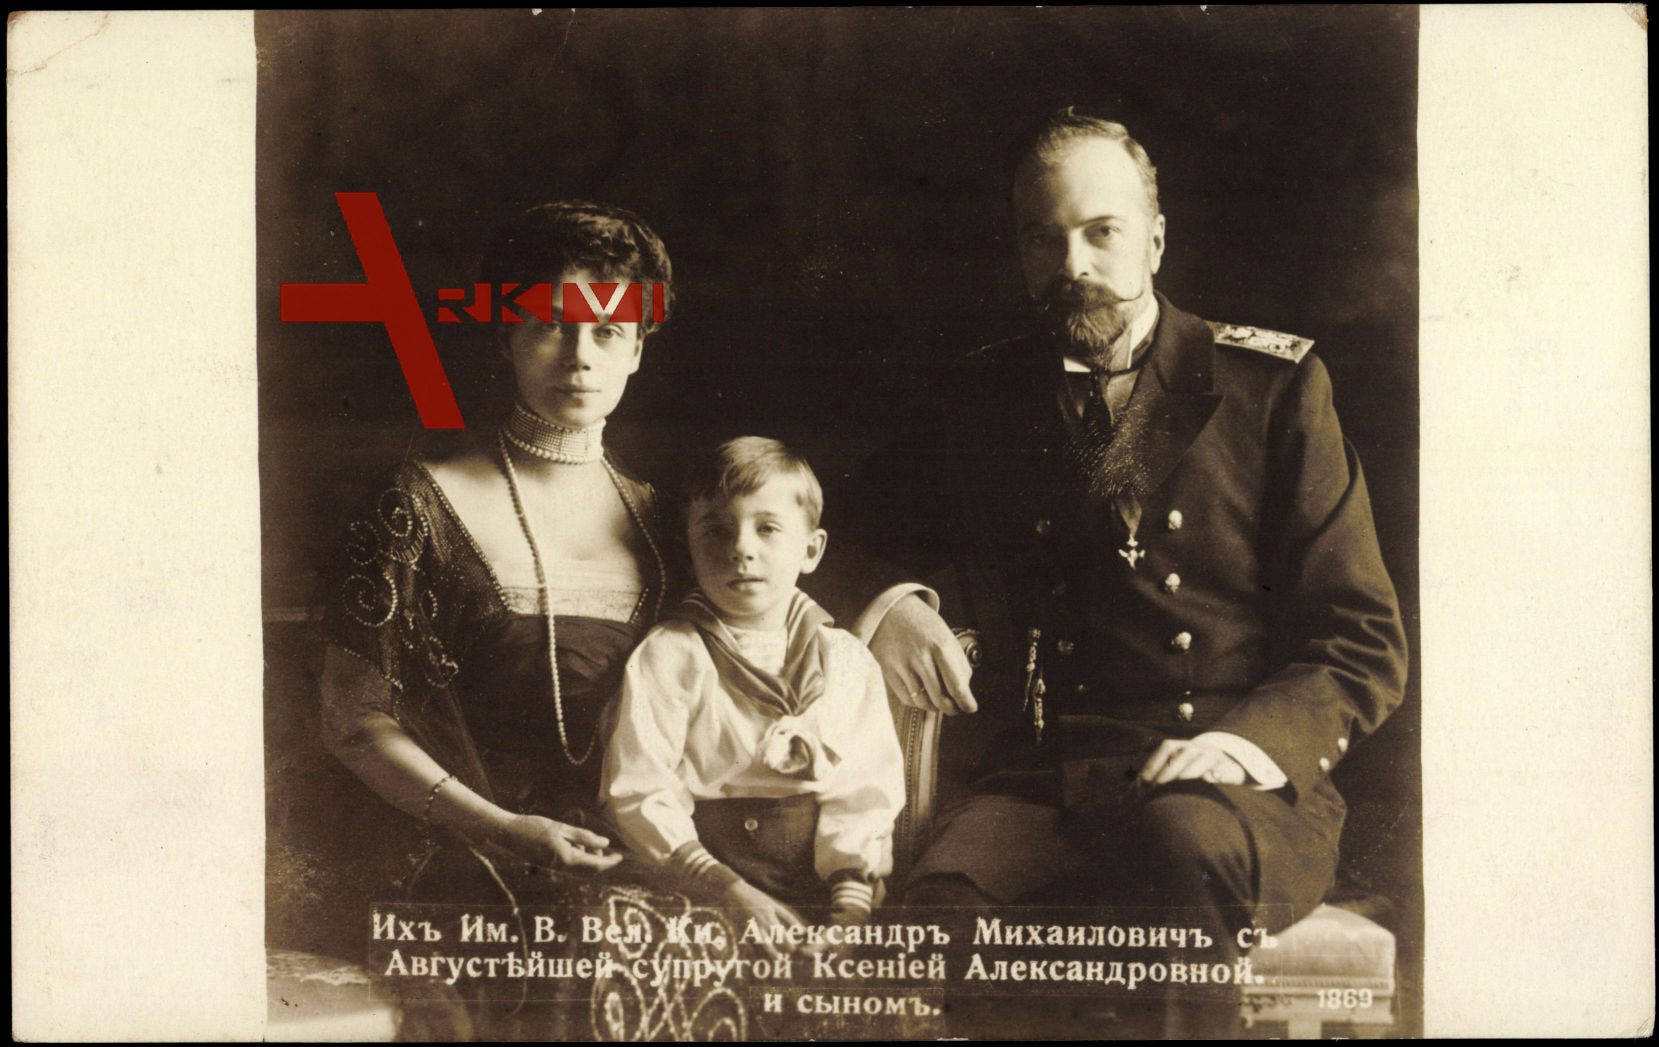 Xenija Alexandrowna Romanow, Alexander Michailowitsch, Adel Russland